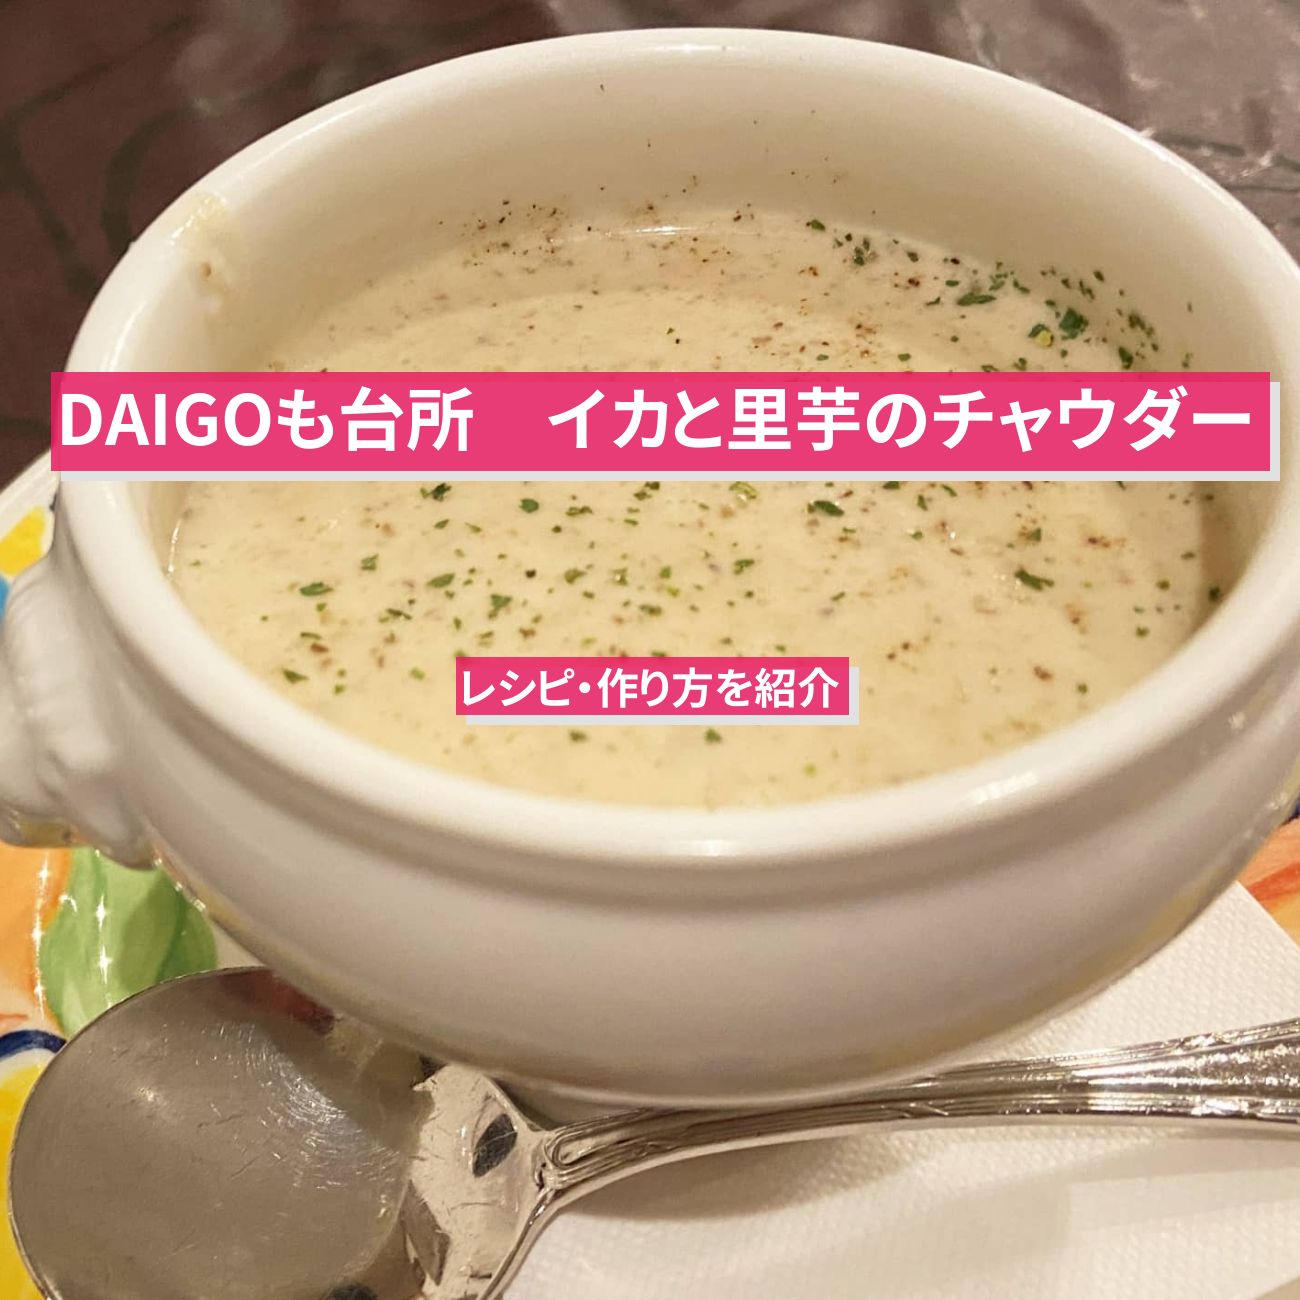 【DAIGOも台所】『イカと里芋のチャウダー』のレシピ・作り方を紹介